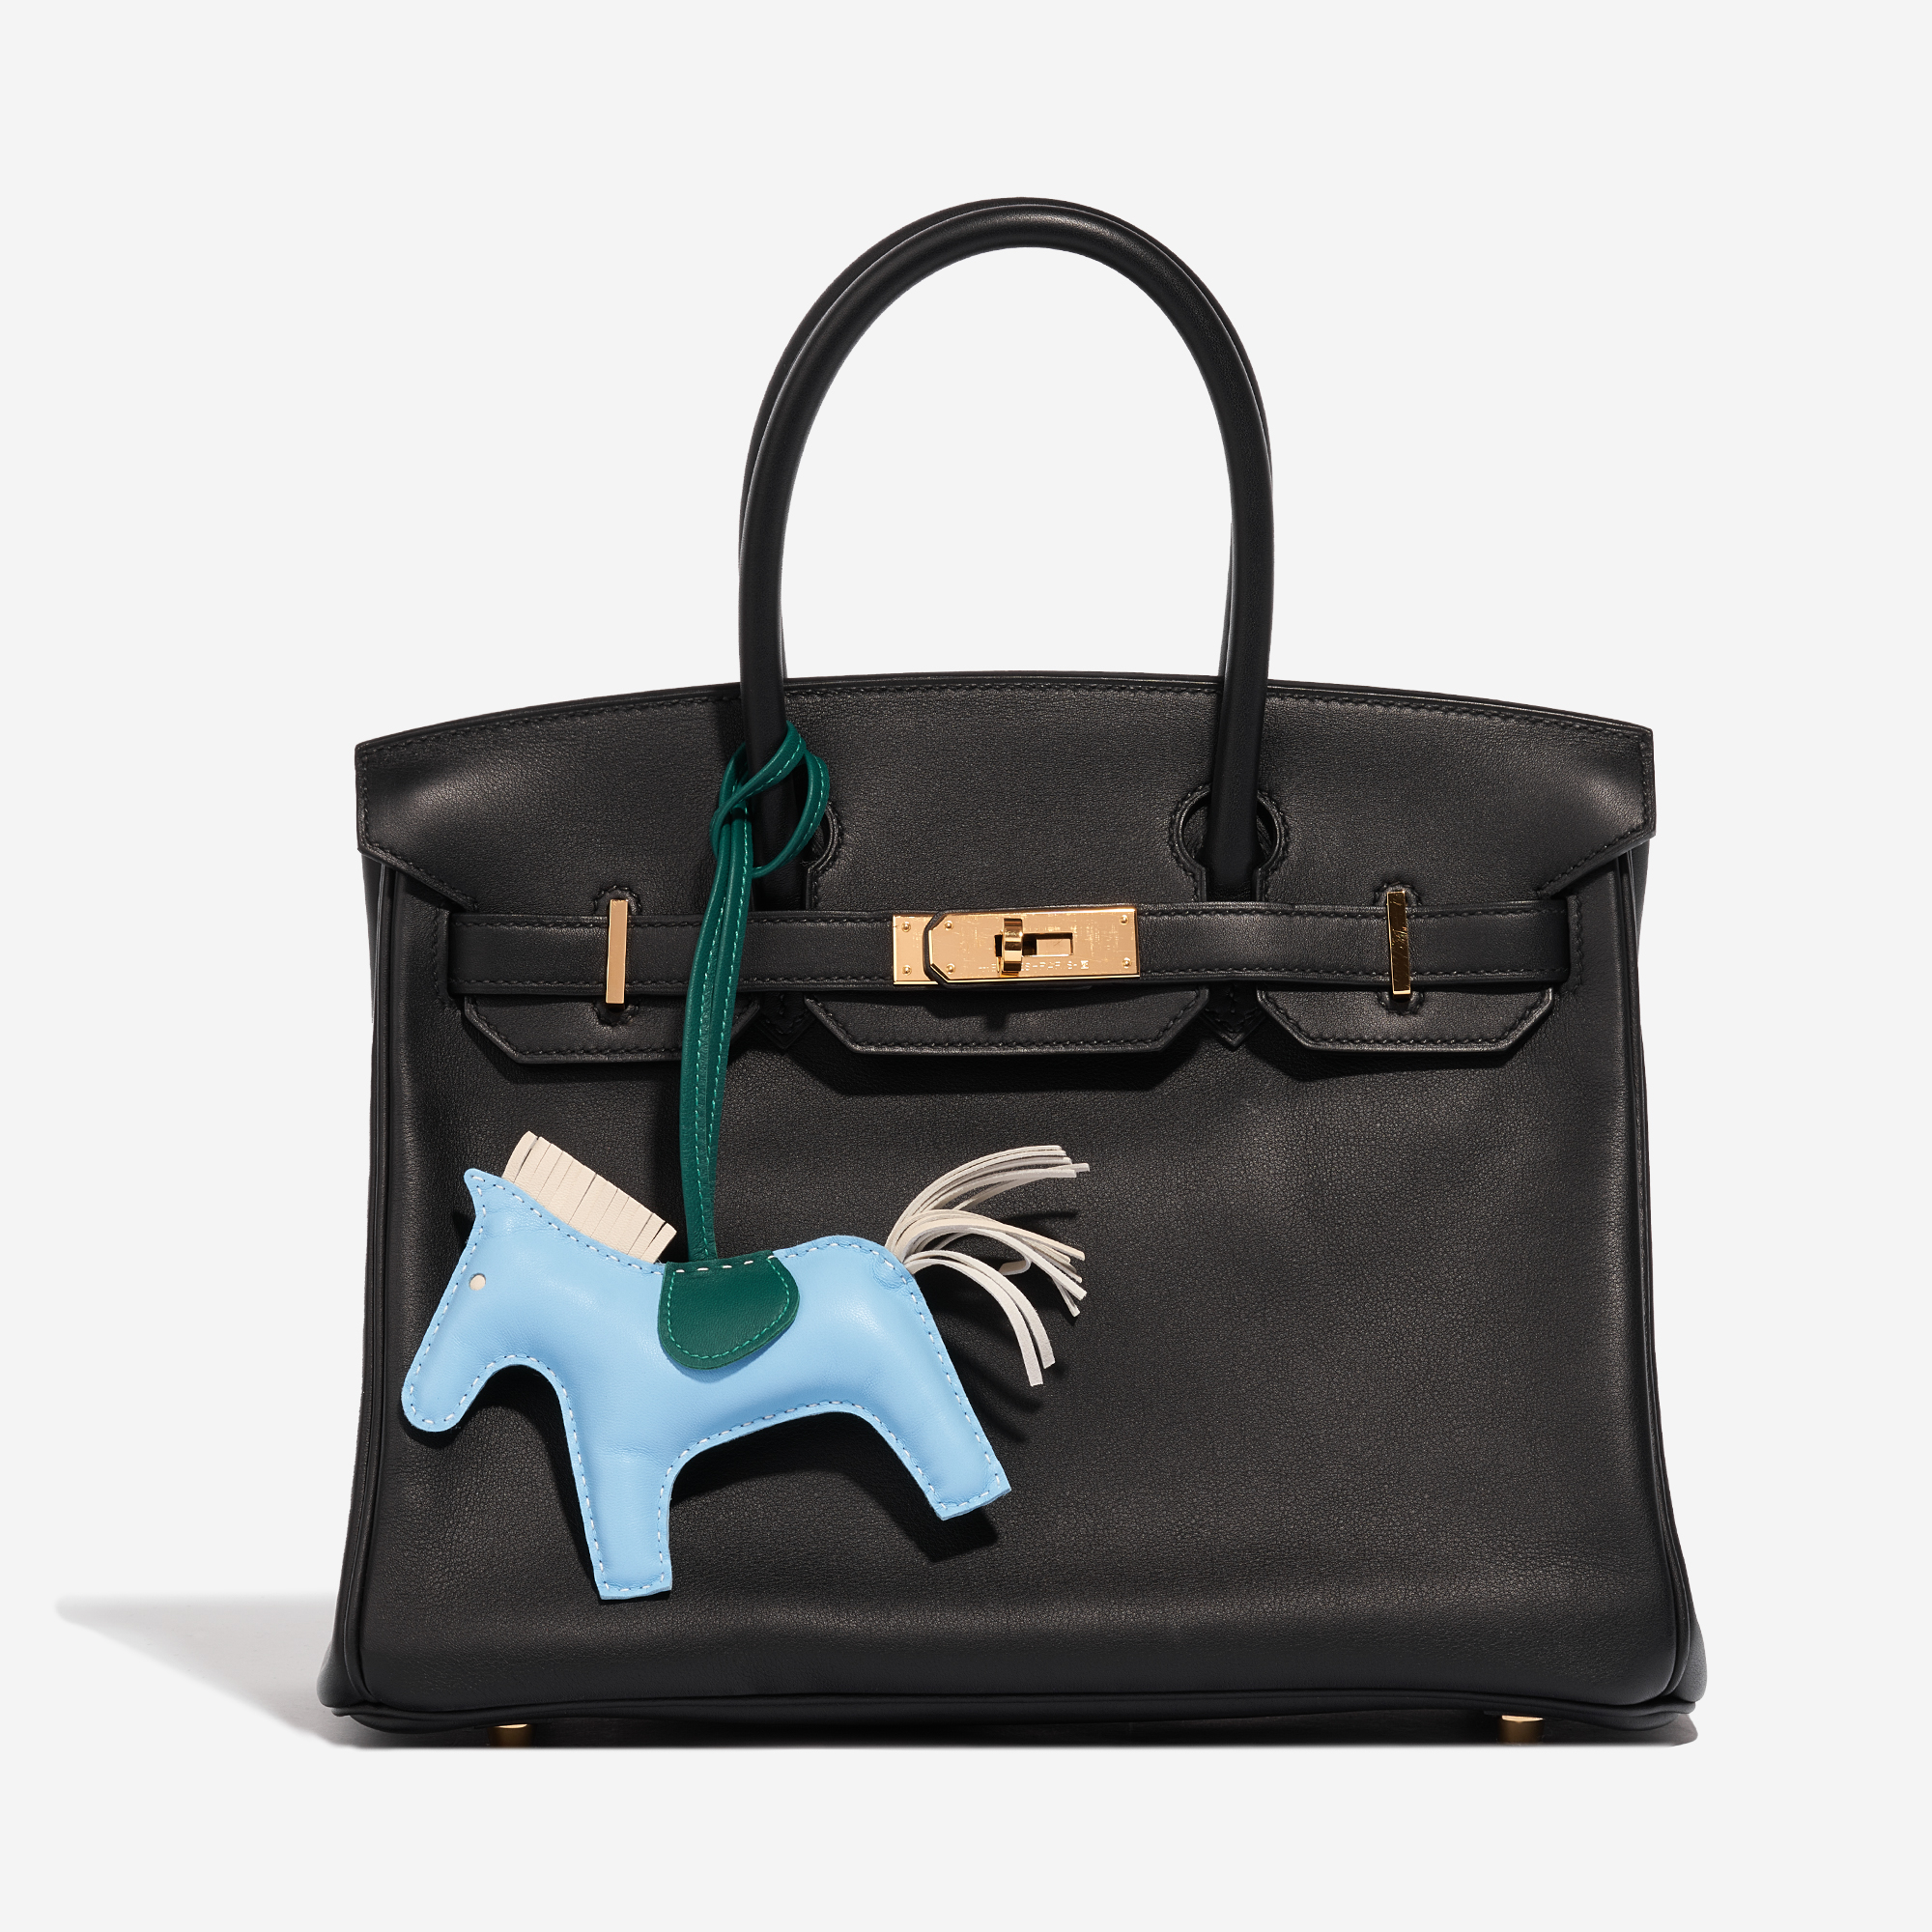 Sac Hermès d'occasion Rodeo MM Milo Lamb Bleu Céleste / Beton / Malachite Beige, Blue, Green Front | Vendez votre sac de créateur sur Saclab.com